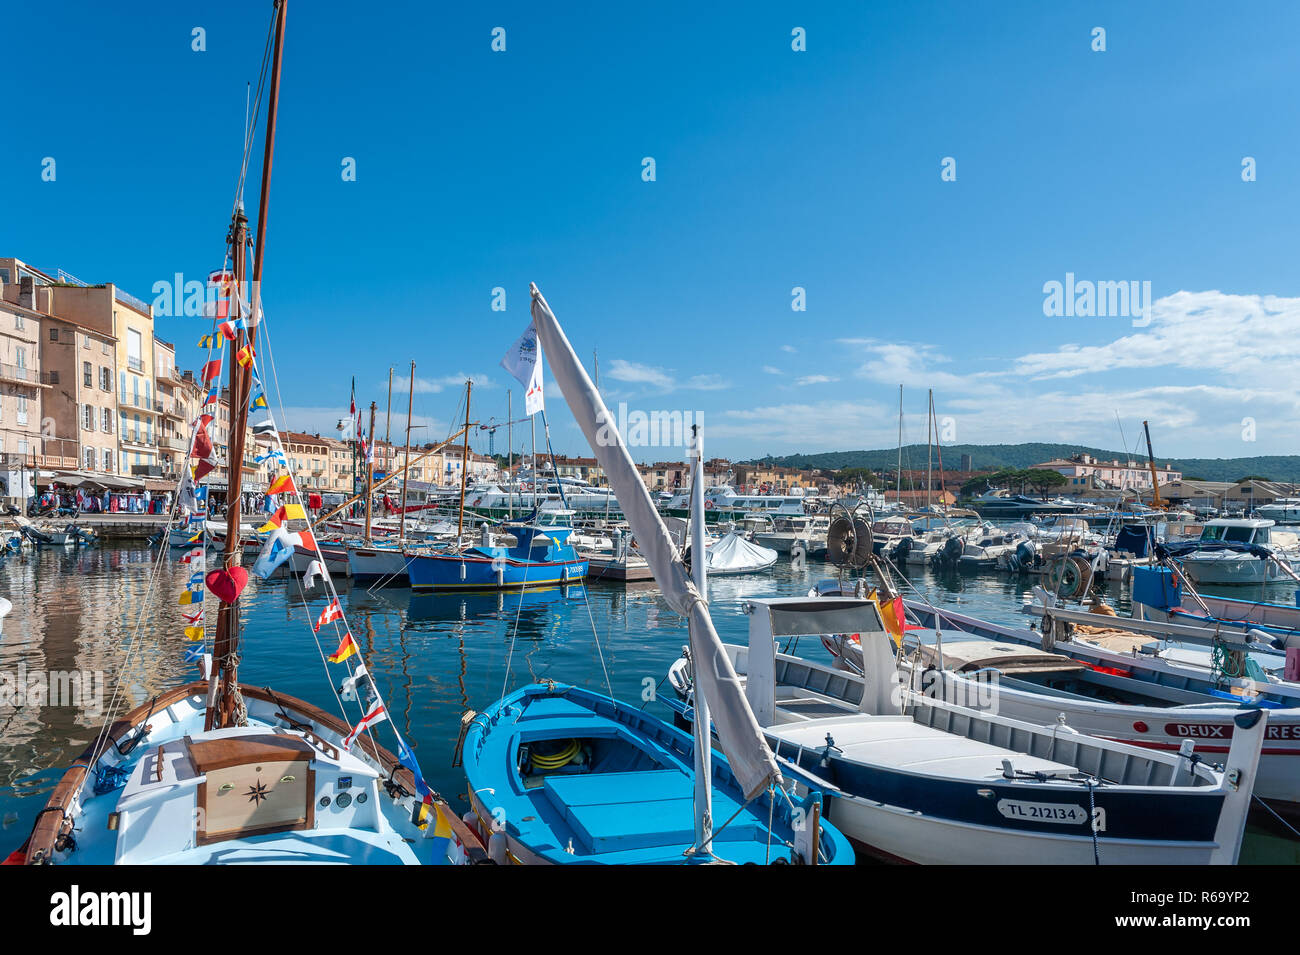 Bateaux de pêche dans le port, Saint-Tropez, Var, Provence-Alpes-Côte d'Azur, France, Europe Banque D'Images